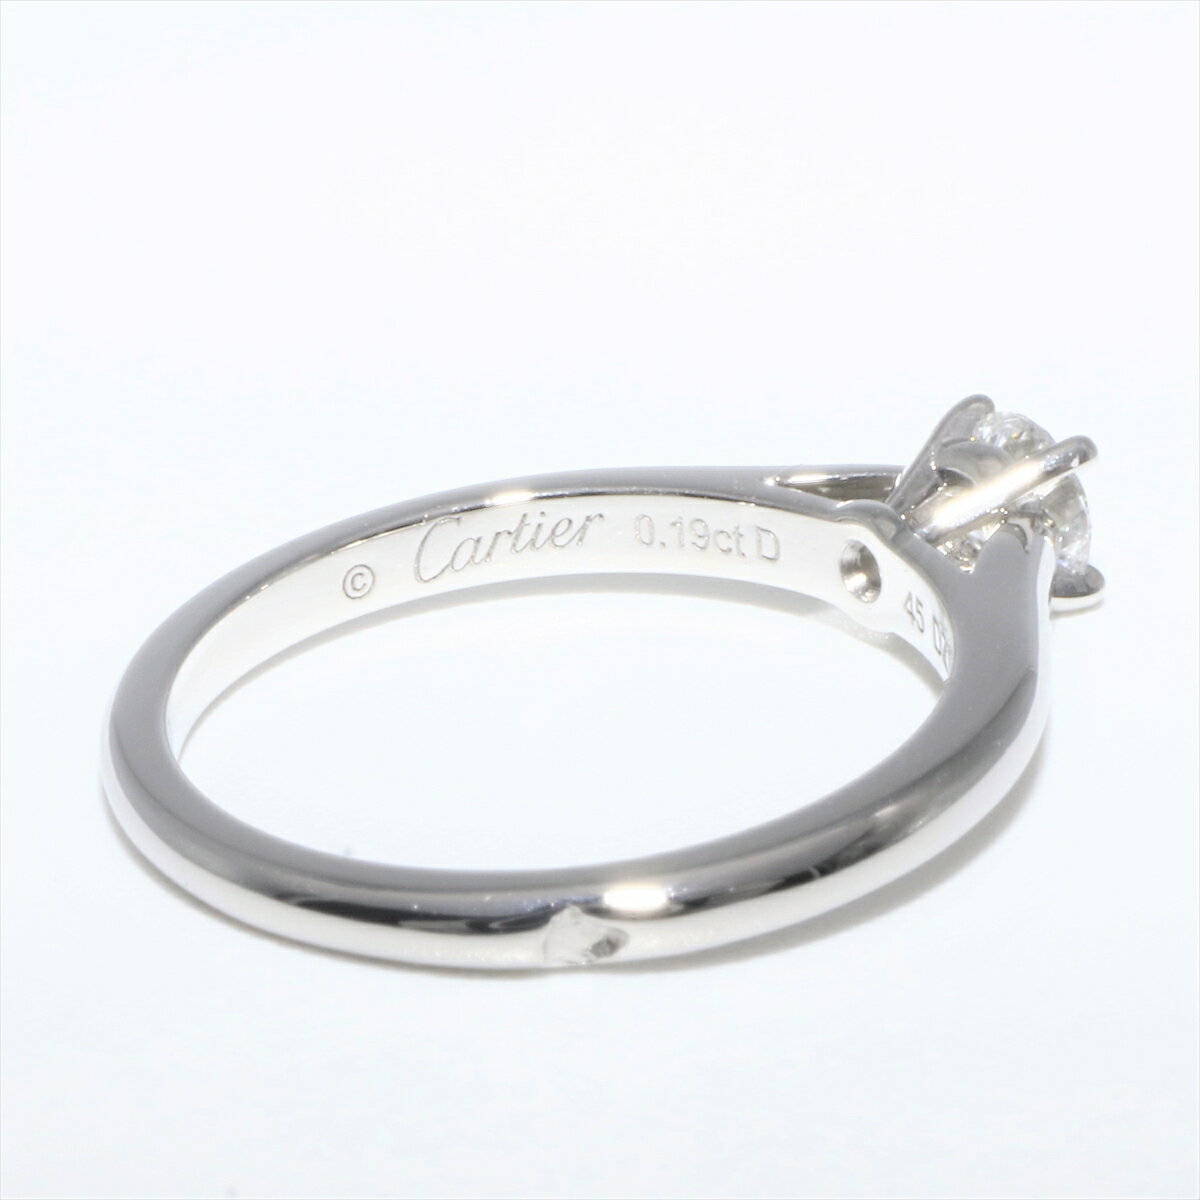 【楽天市場】【ギフト品質】カルティエ Cartier エンゲージリング 婚約指輪 ソリテール ダイヤモンド 0.19ct レディース 女性